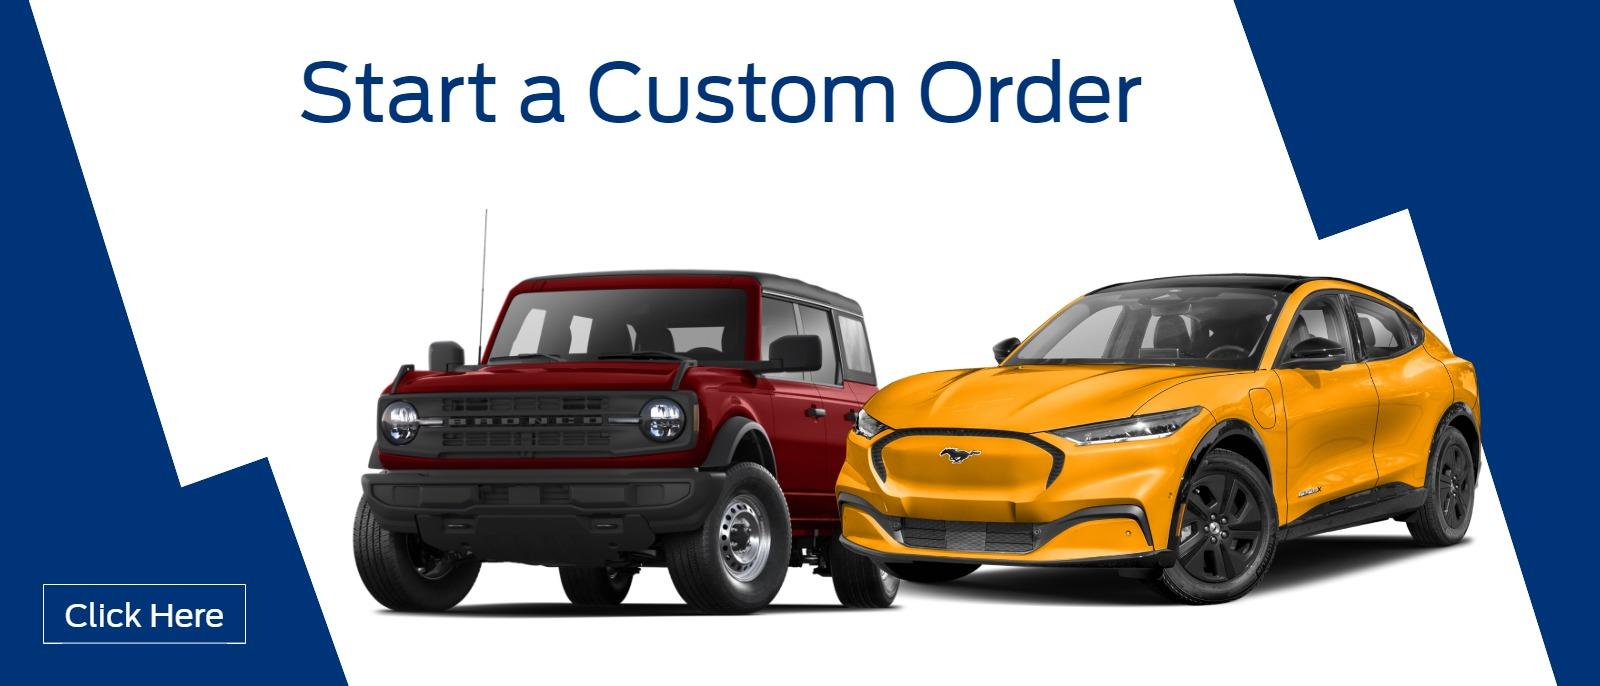 Start a custom order